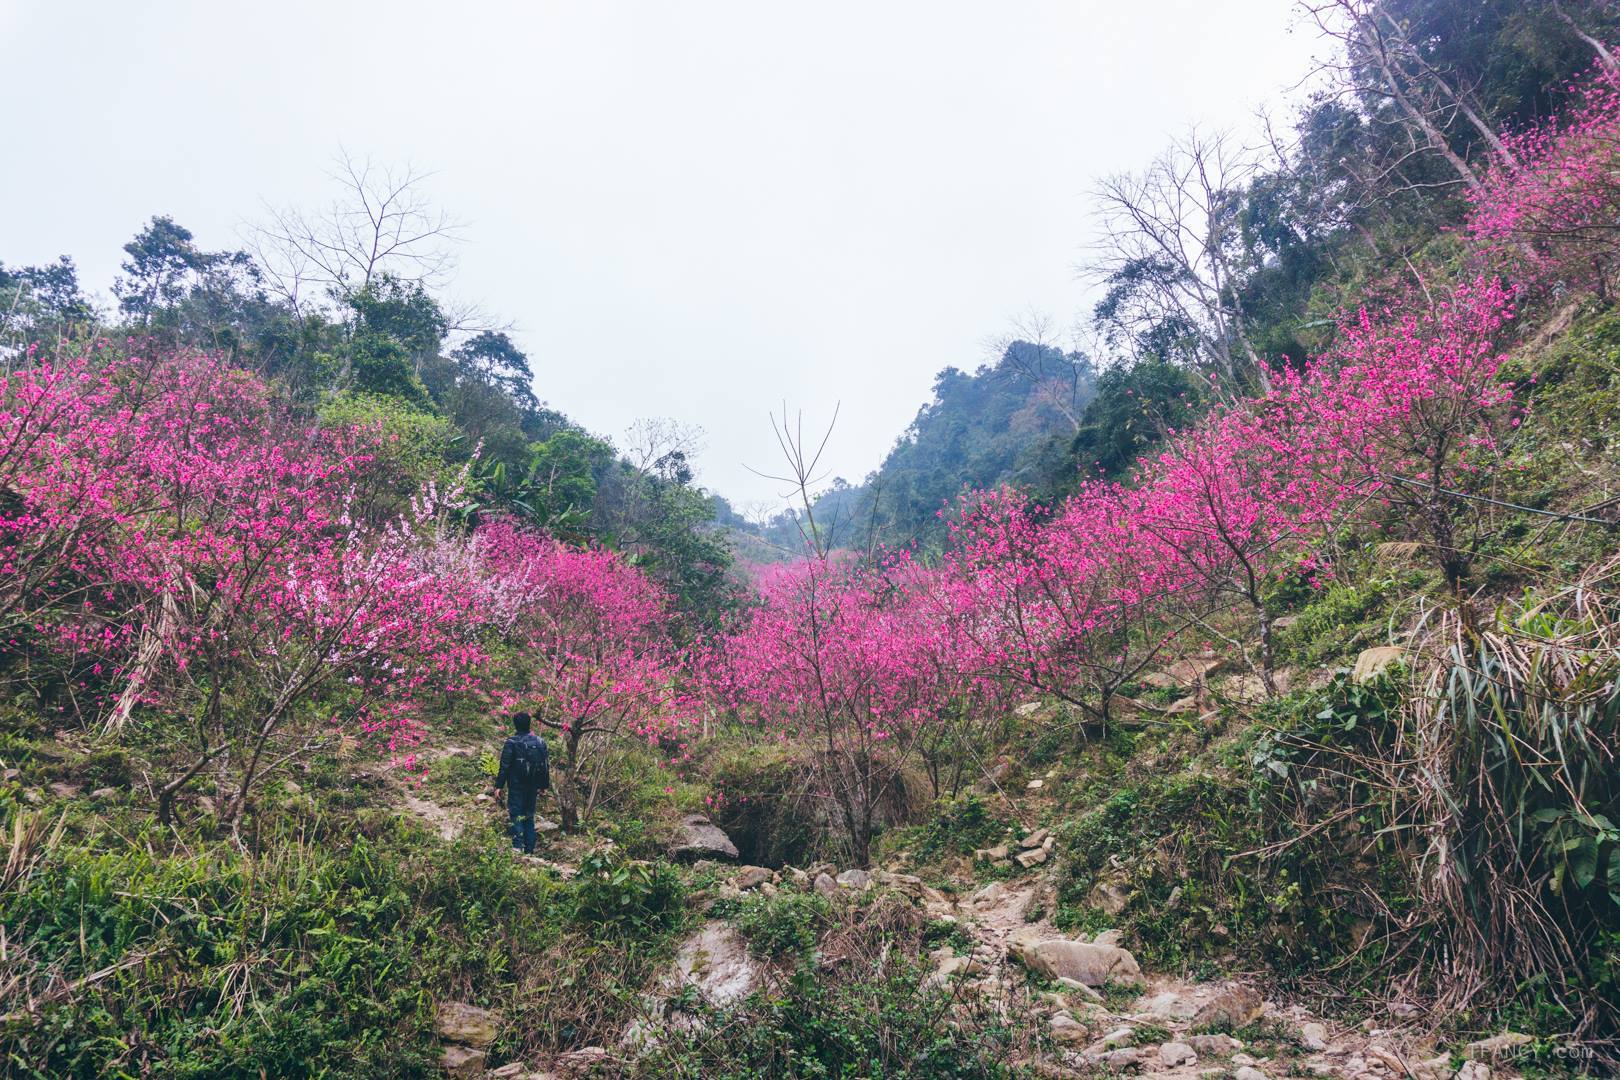 Hoa đào là biểu tượng của sự may mắn và thịnh vượng trong văn hóa Việt Nam. Hãy xem hình ảnh của hoa đào để cảm nhận vẻ đẹp tuyệt vời của loài hoa này và tận hưởng niềm hạnh phúc và sự may mắn mà nó mang lại.